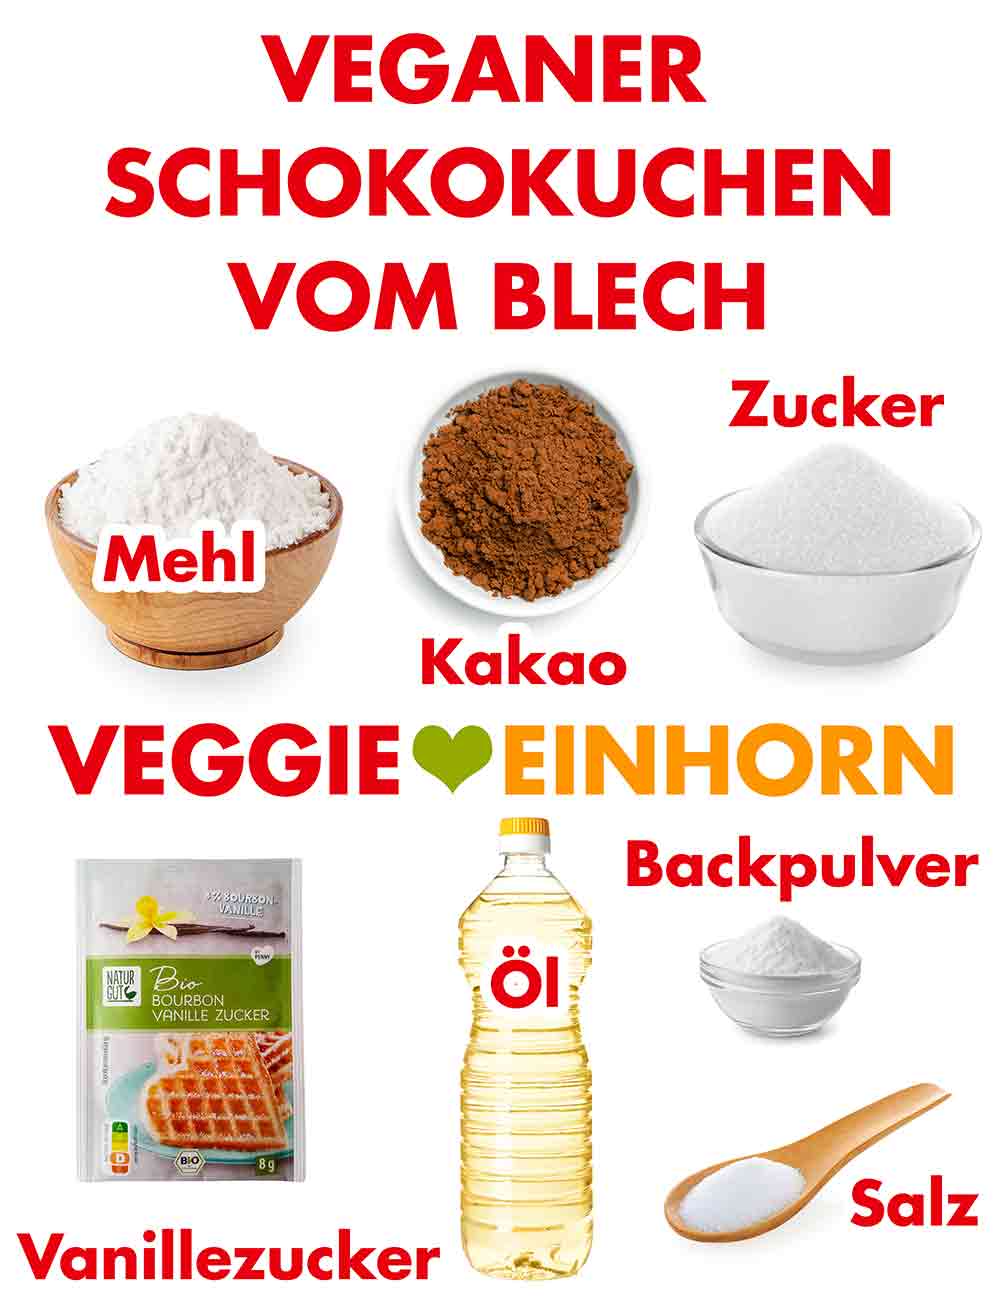 Zutaten für veganen Schoko Blechkuchen mit Kakaopulver